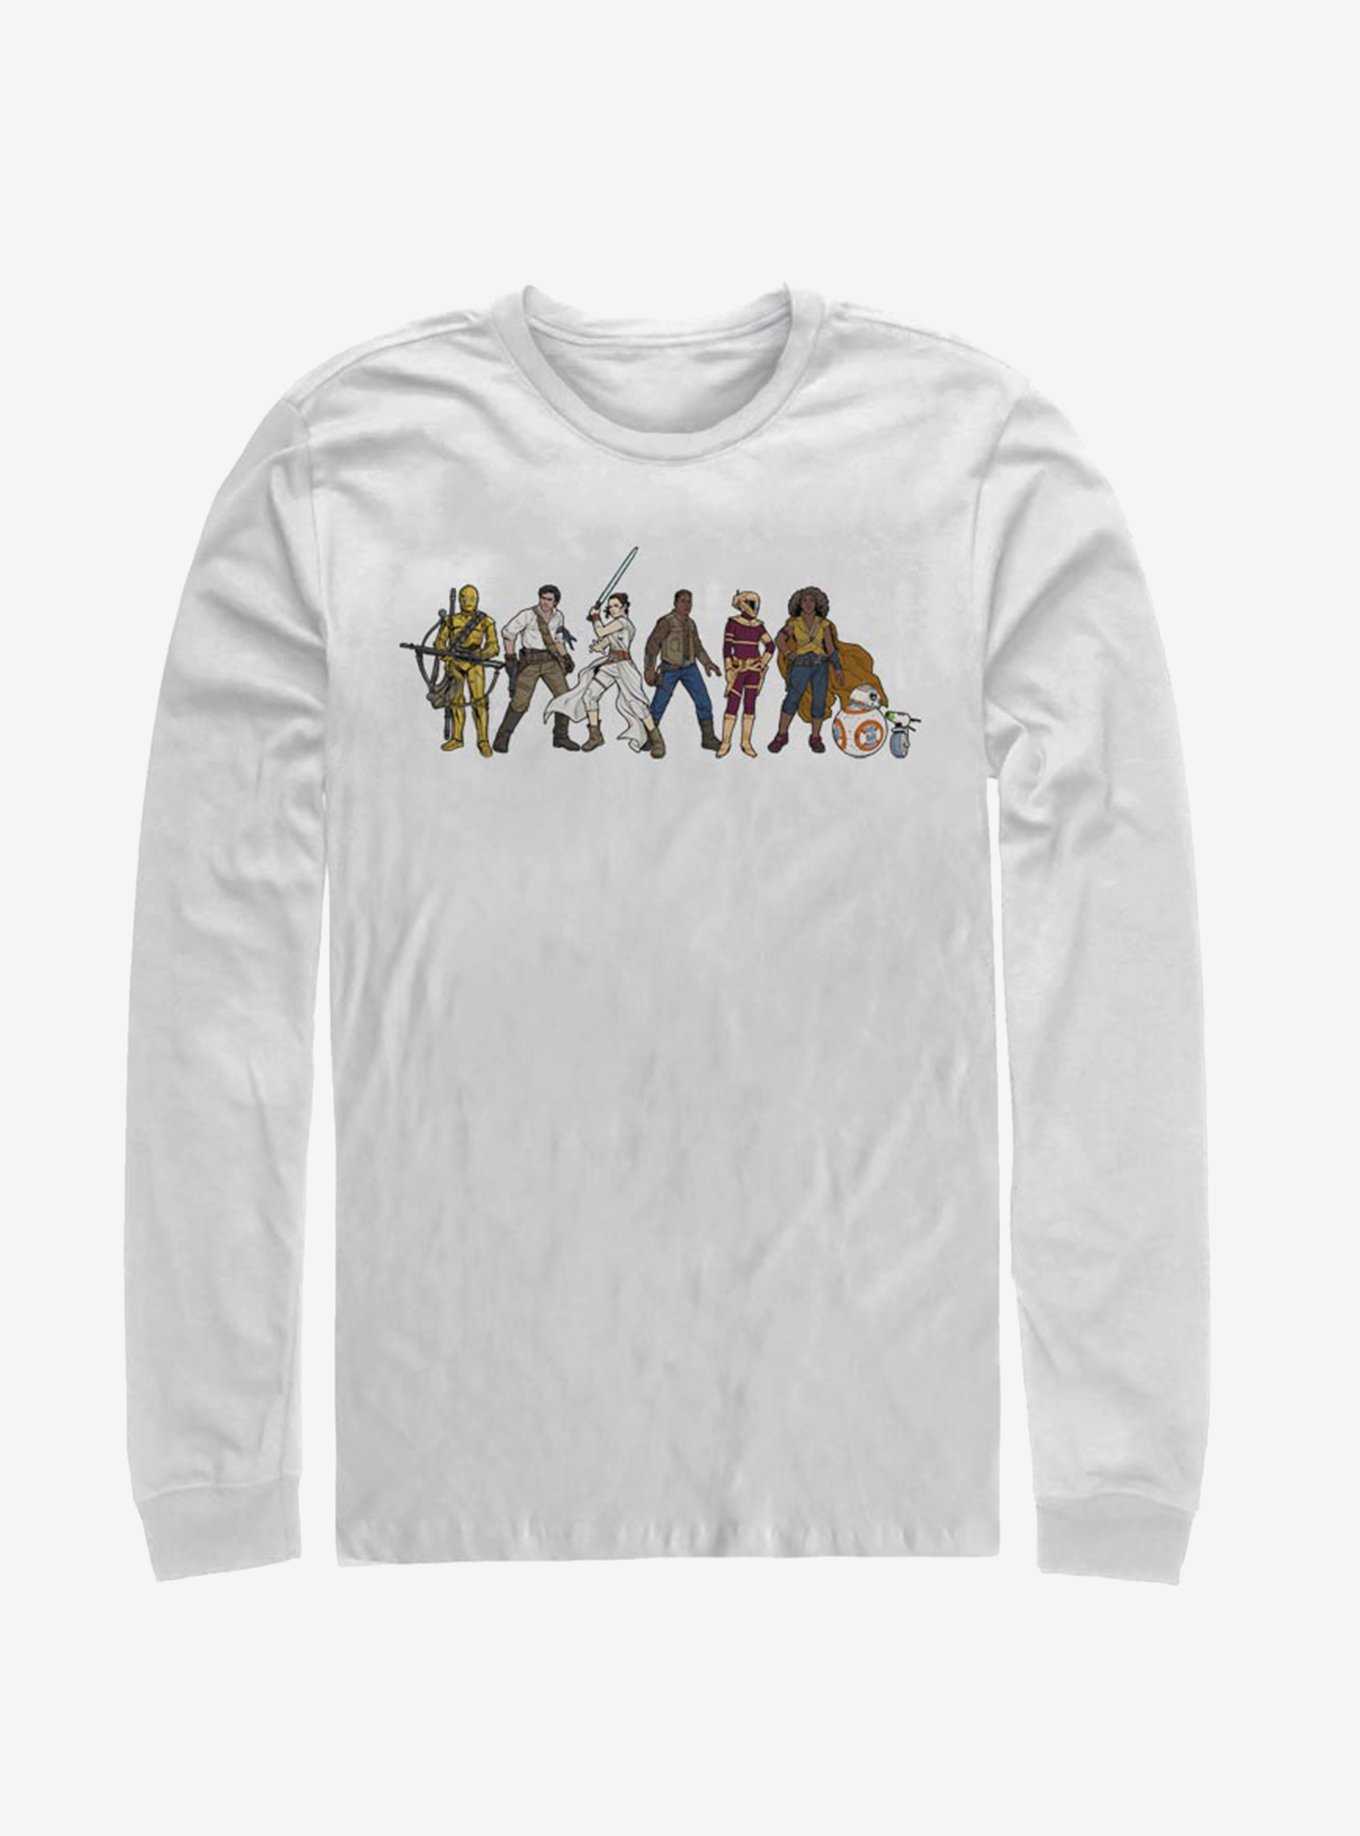 Star Wars Episode IX The Rise Of Skywalker Resistance Line-Up Long-Sleeve T-Shirt, , hi-res